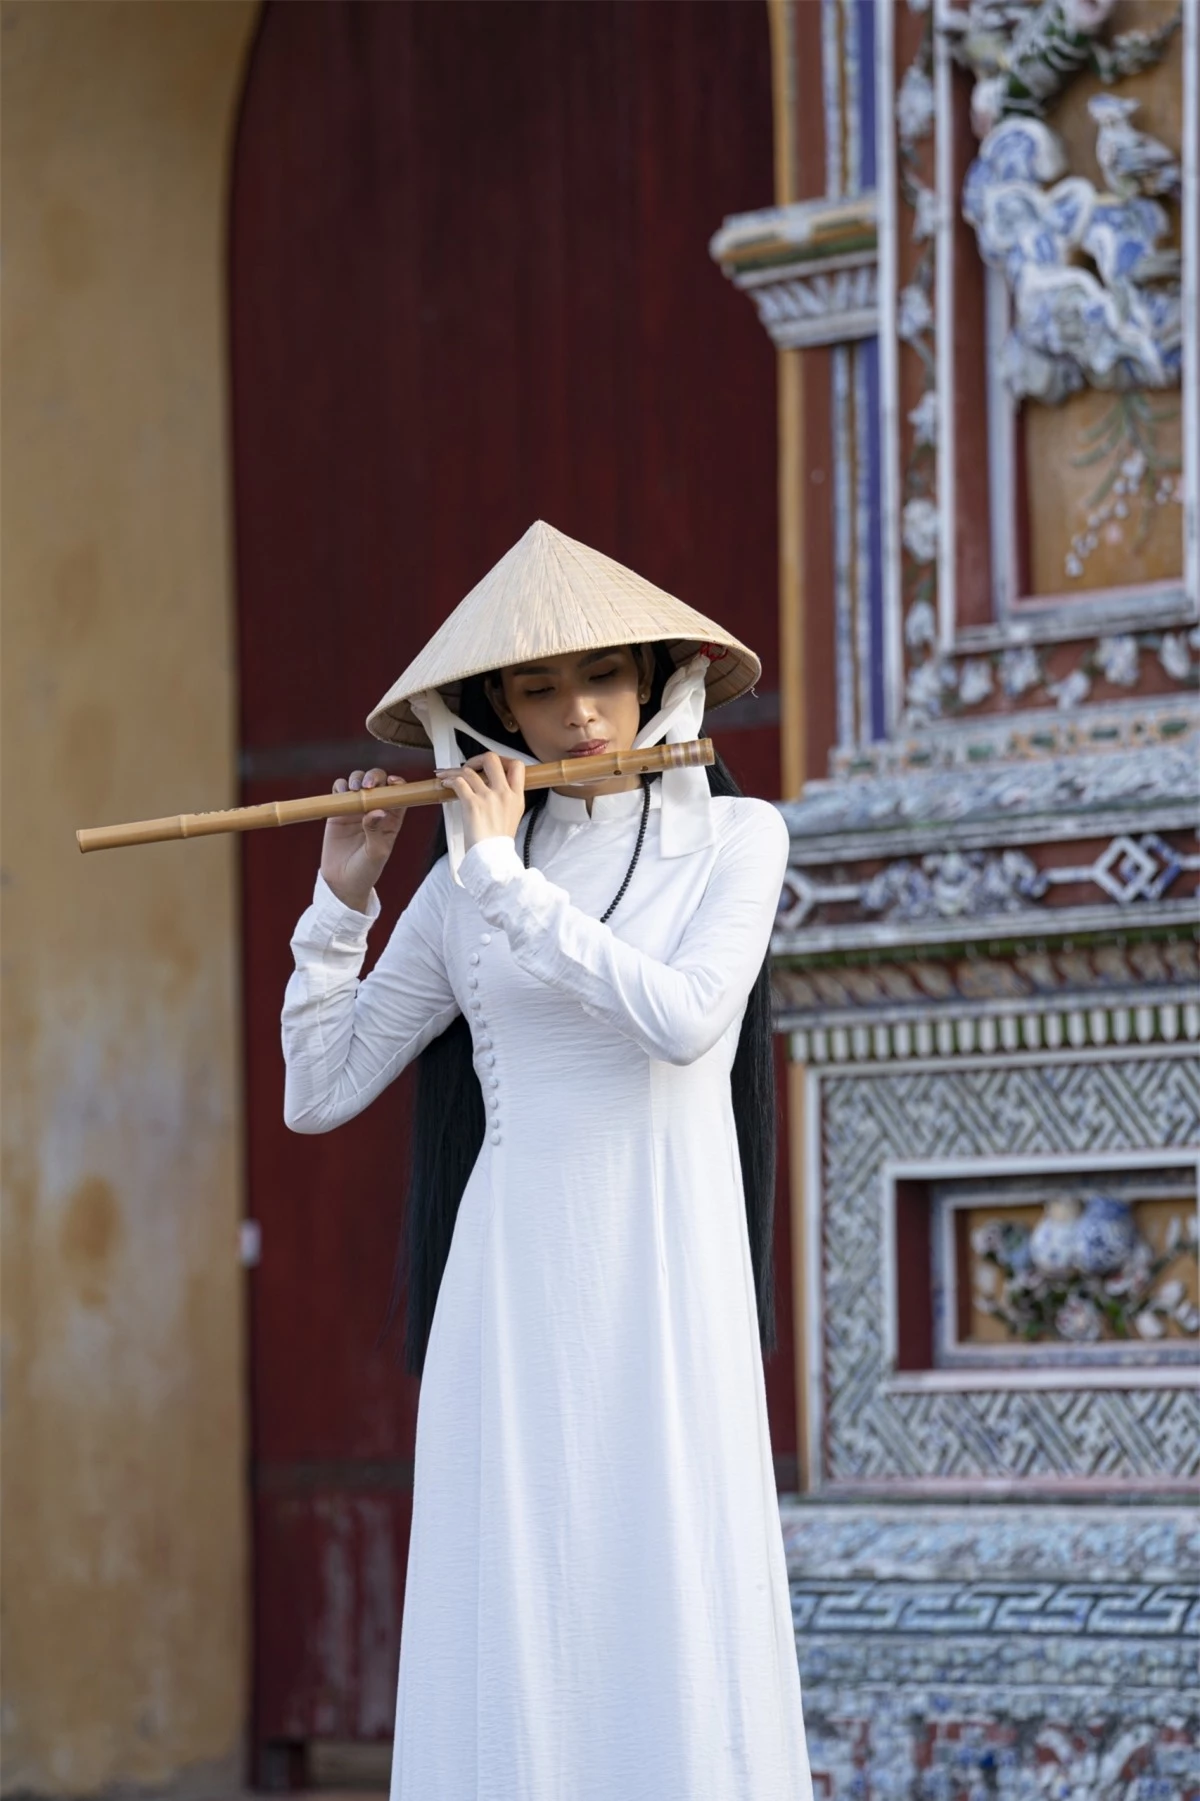 Trương Thị May dạo bước từ cổng Ngọ Môn đến Hoành Thành Huế, cô thích thú những kiến trúc độc đáo của nhà Nguyễn từ mấy trăm năm trước.